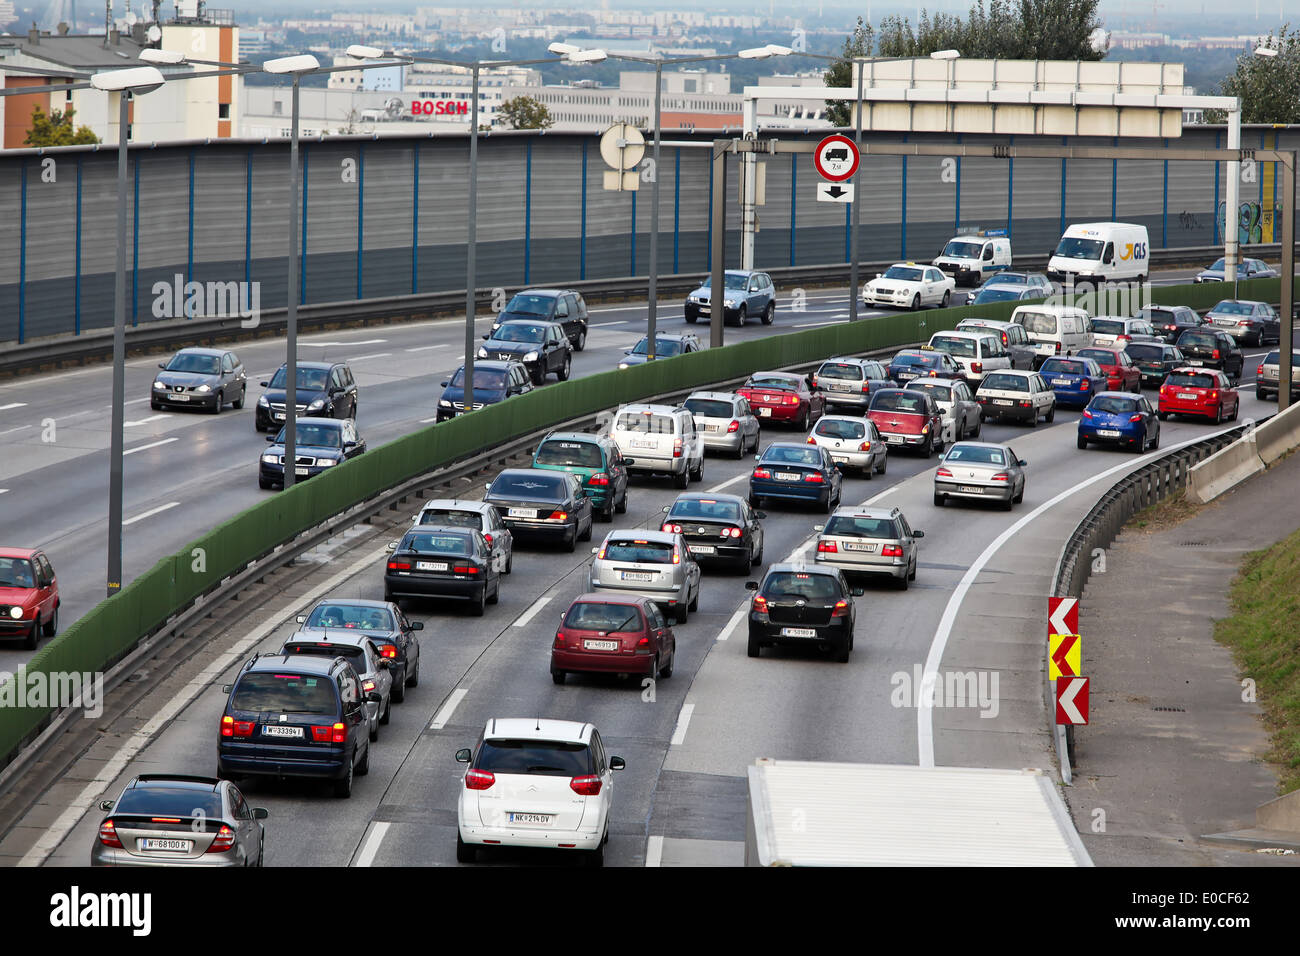 Traffic jam in the traffic by cars on a highway street, Stau im Verkehr mit Autos auf einer Autobahn Strasse Stock Photo